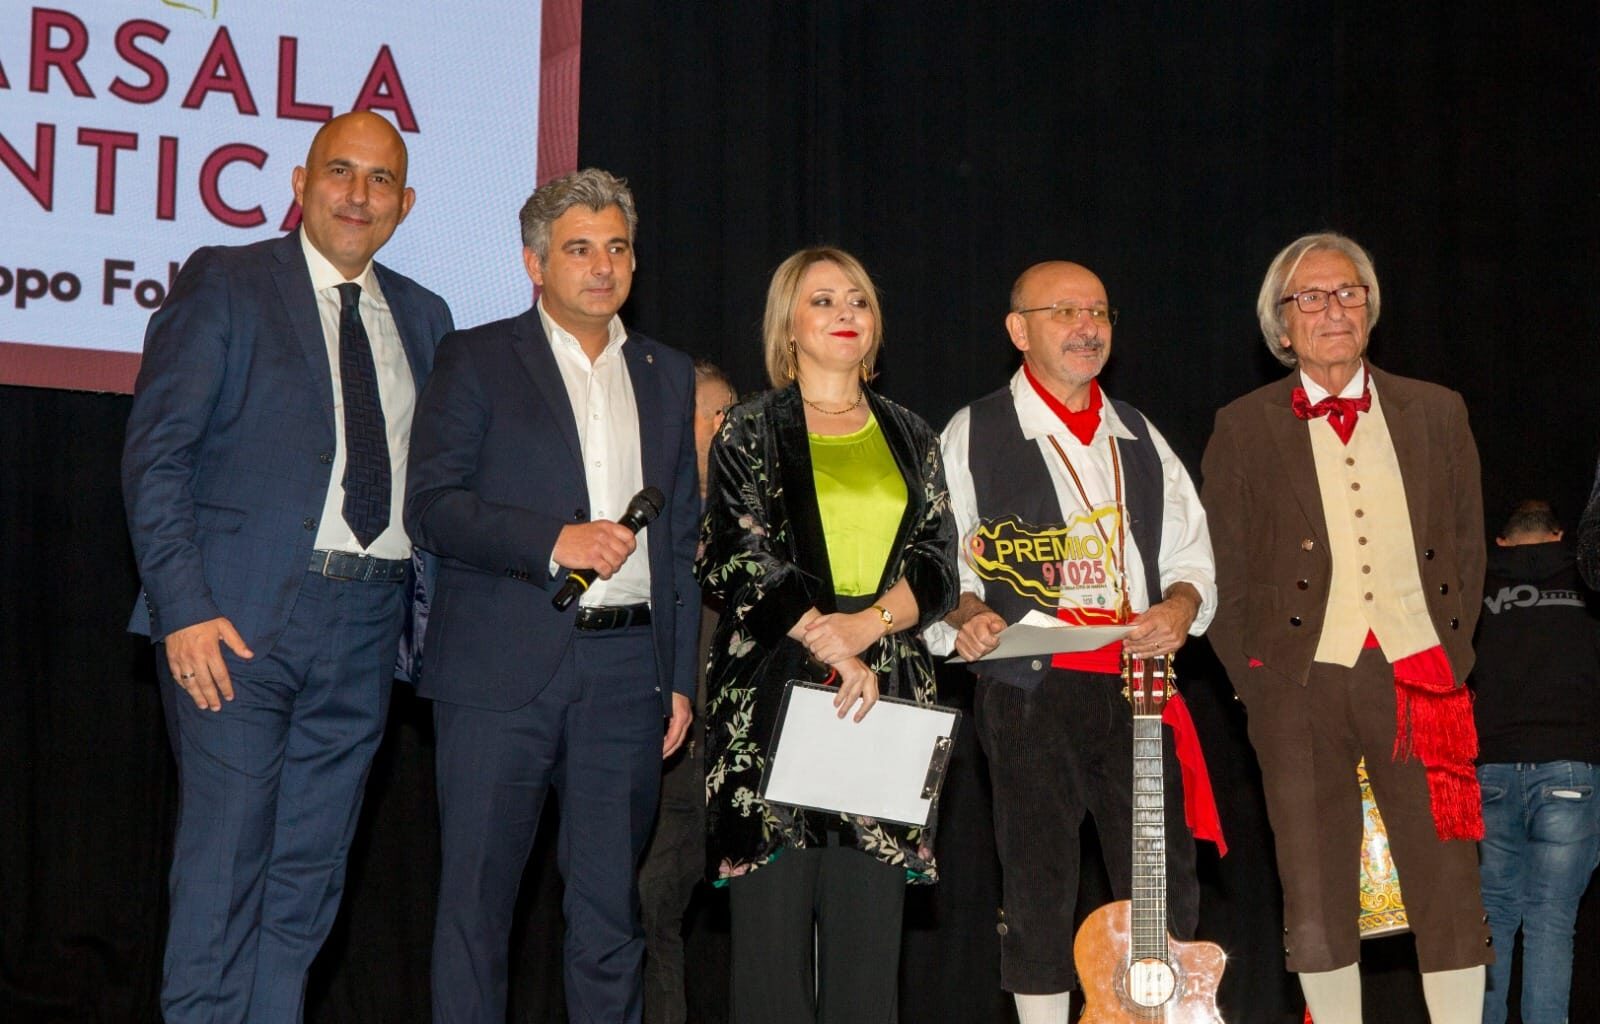 Al Gruppo Folklorico “Marsala Antica” il “Premio 91025”